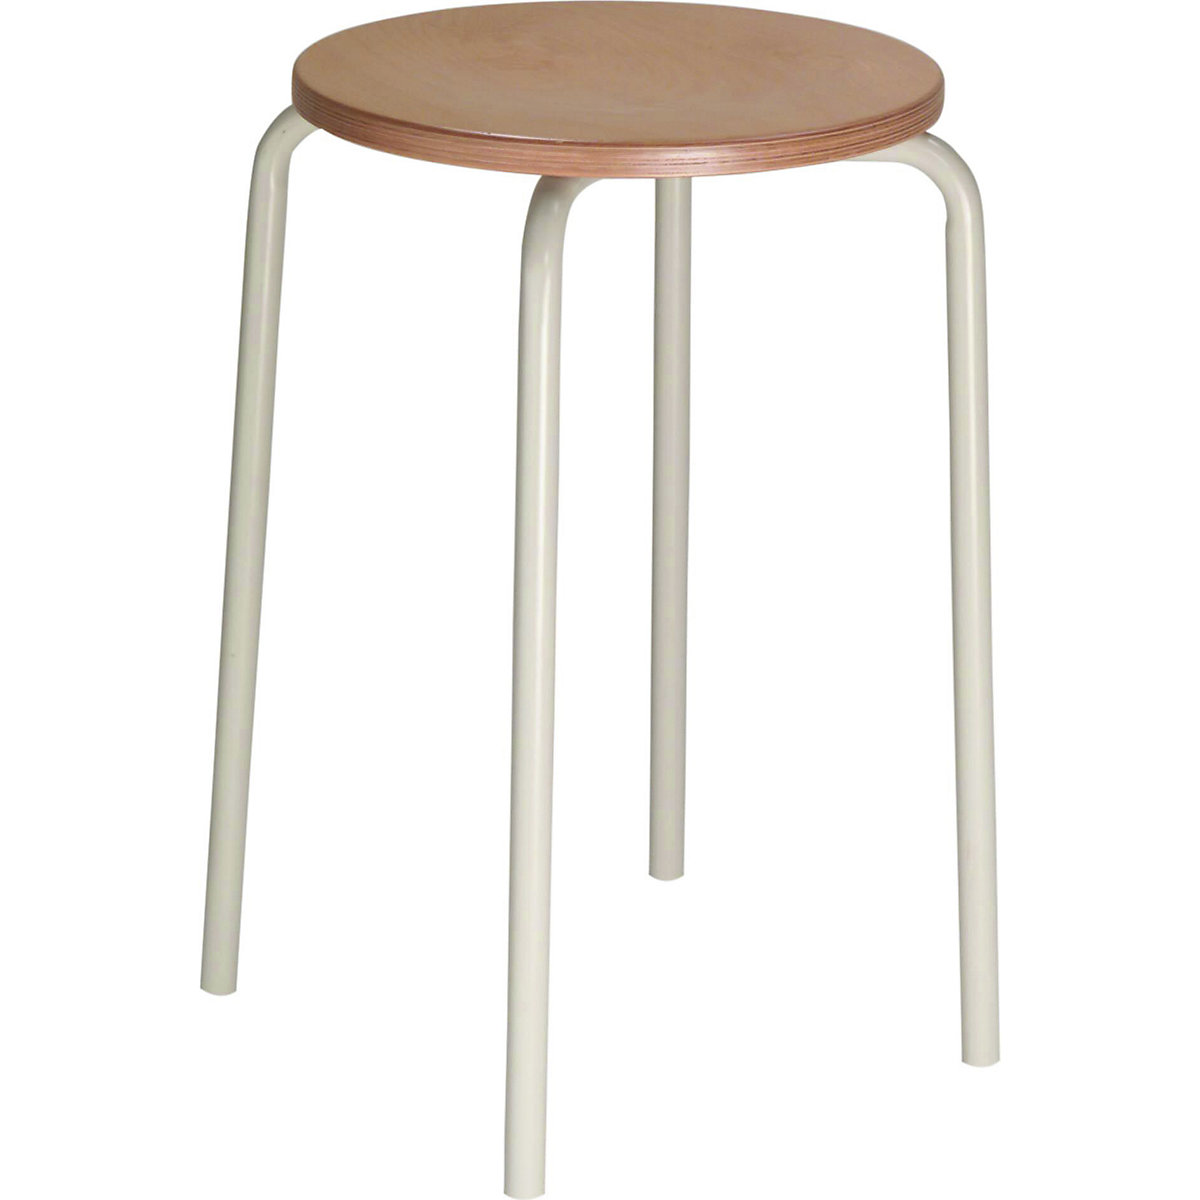 Stacking stool